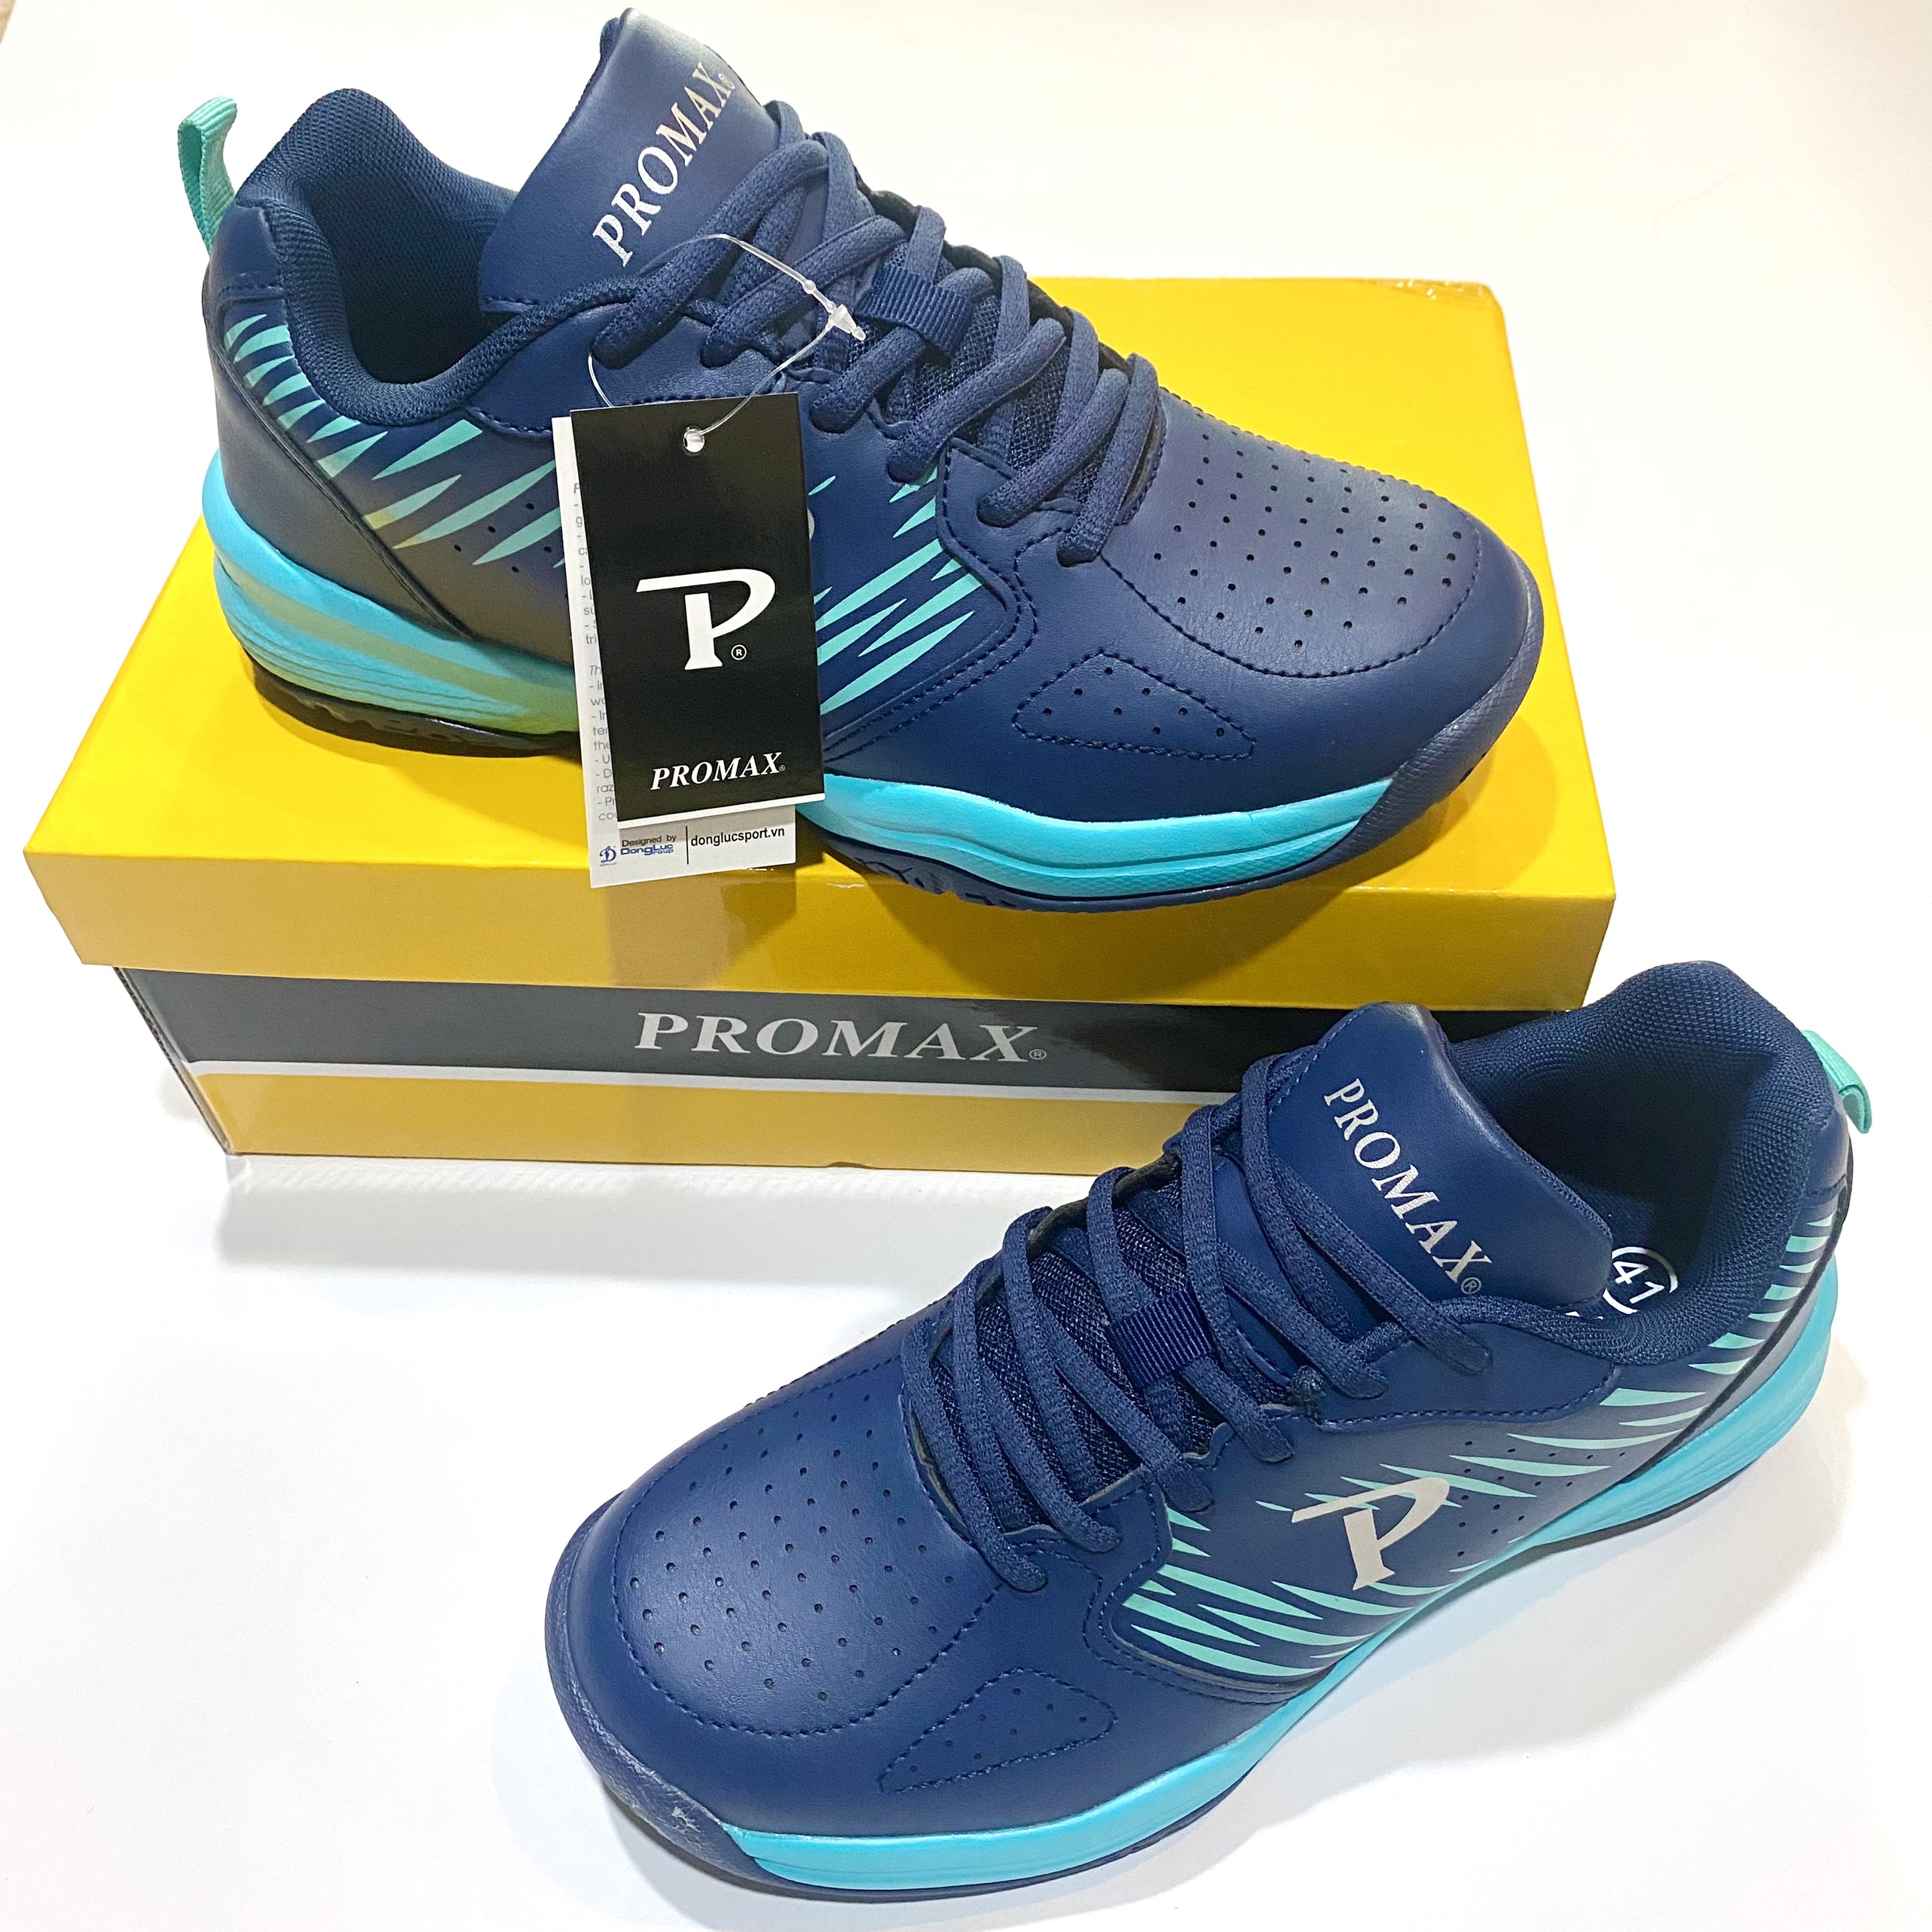 Giày cầu lông PROMAX chính hãng dáng thể thao 2 màu. Da PU bền